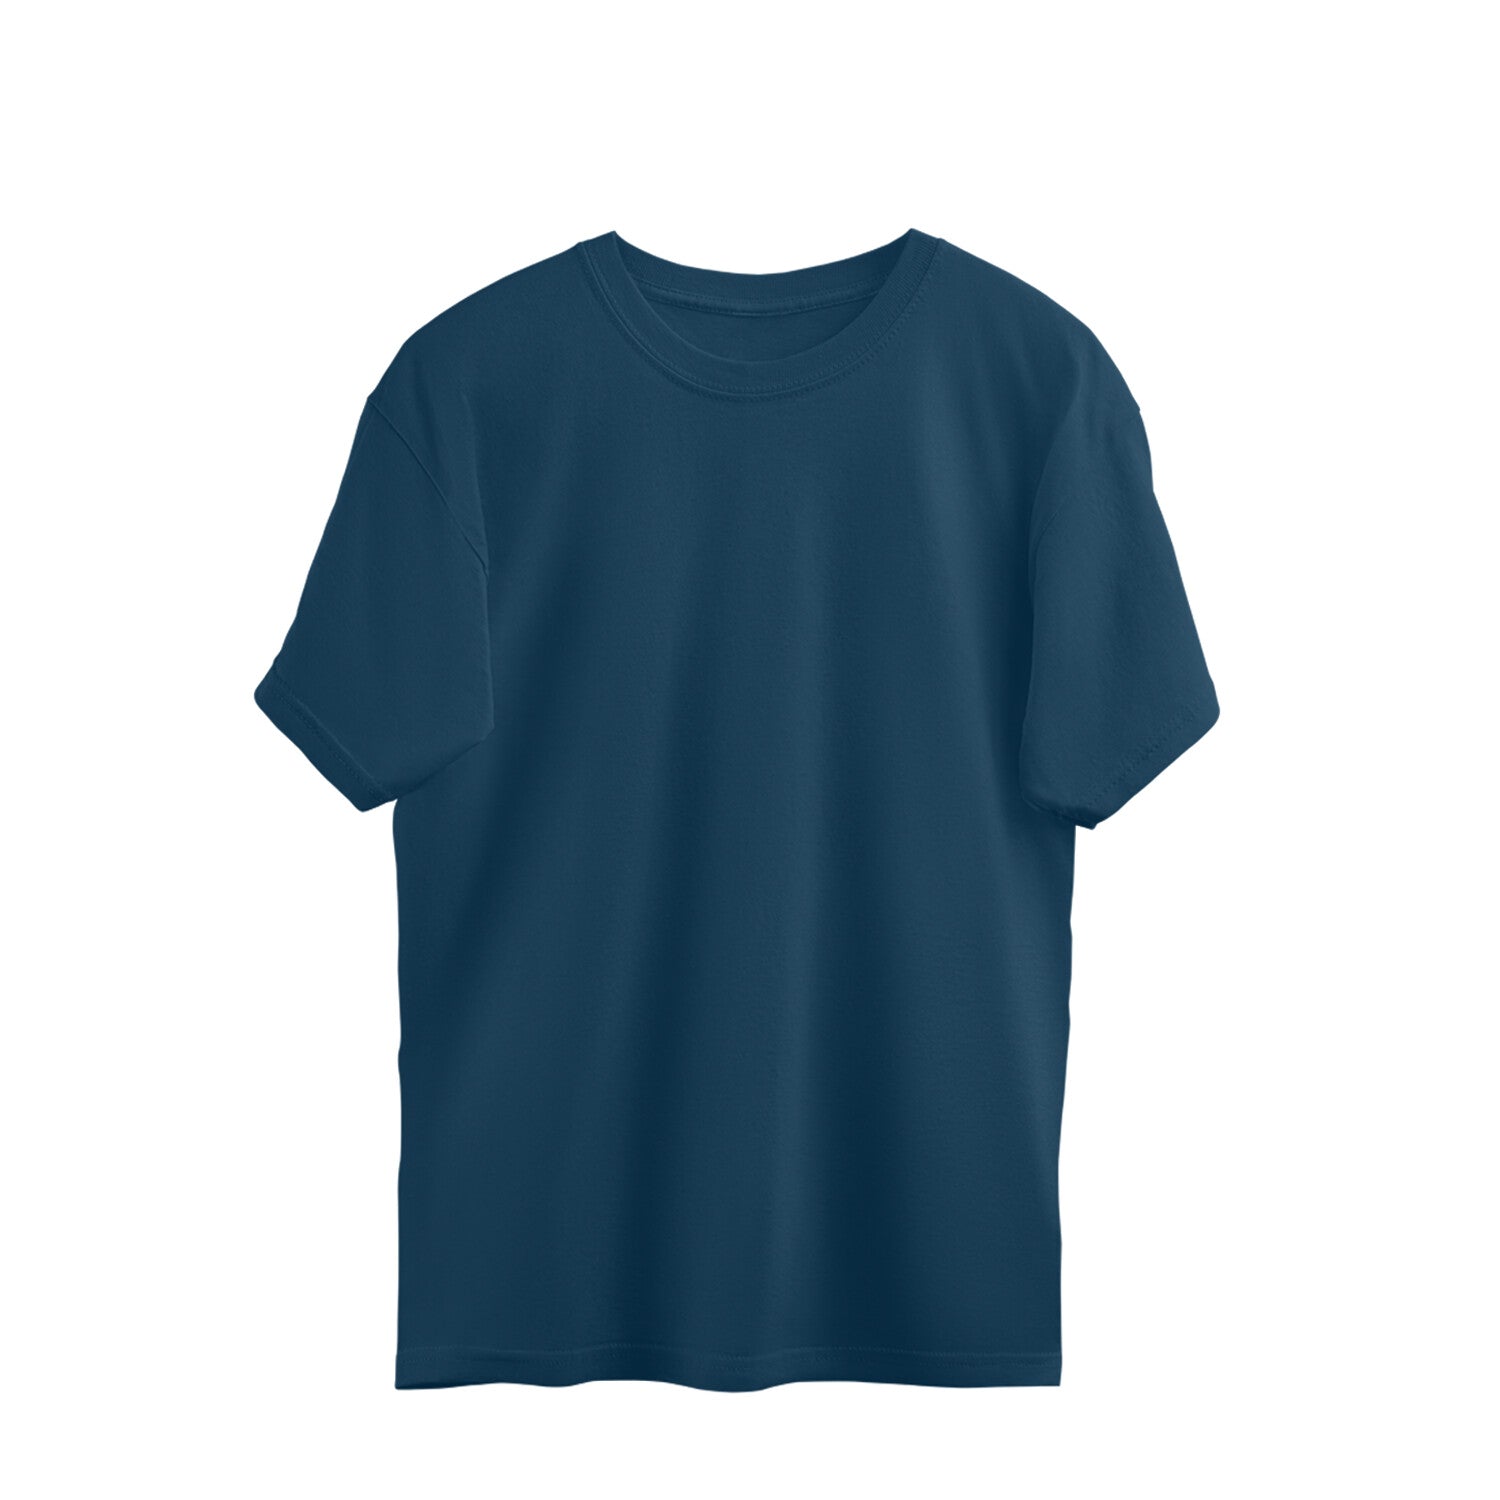 Men's Navy Blue Over-Sized T-shirt